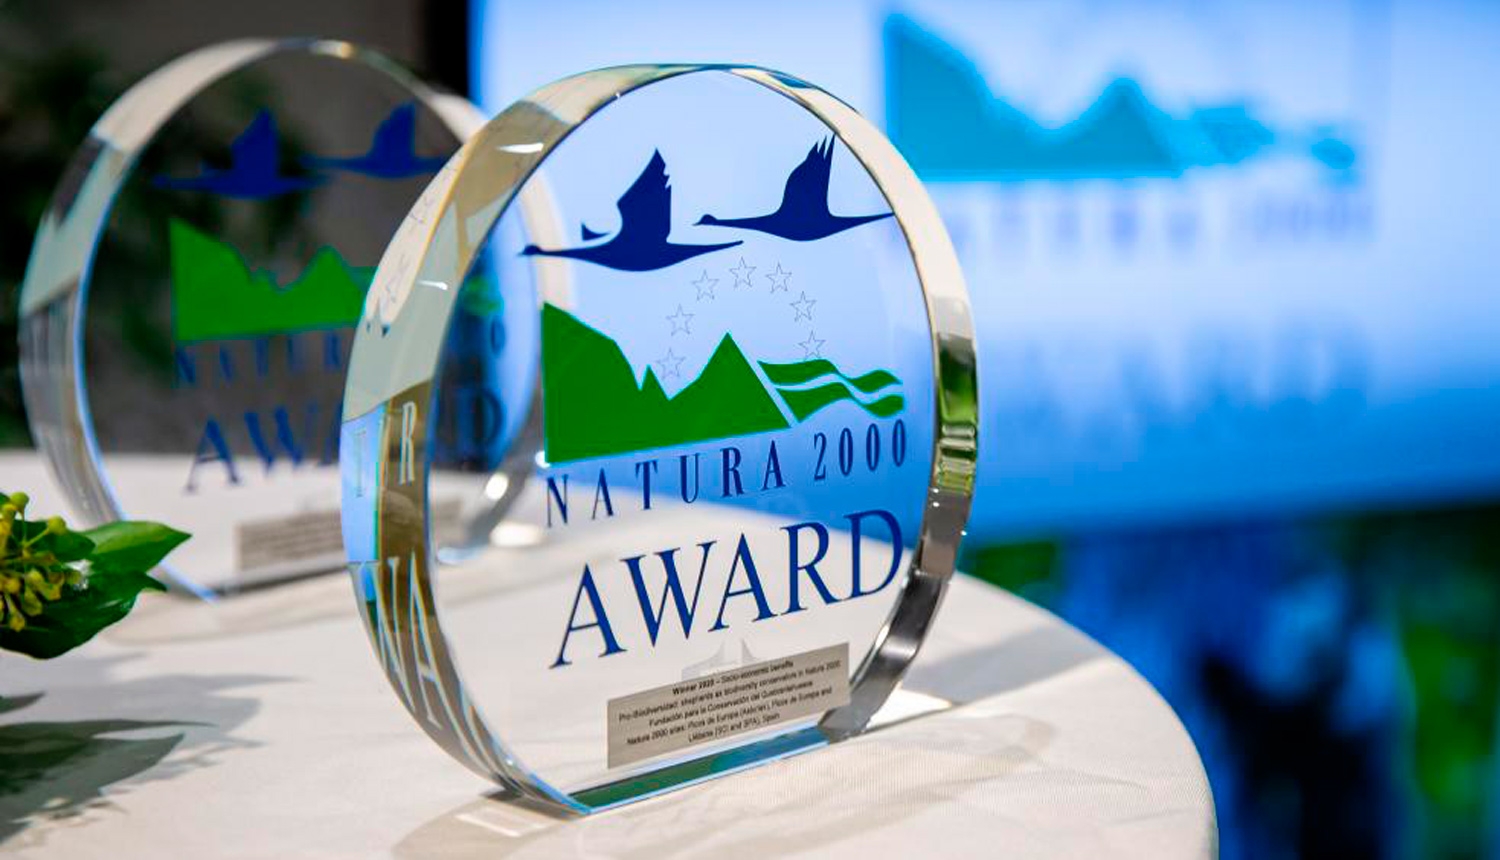 Natura 2000 Award balva